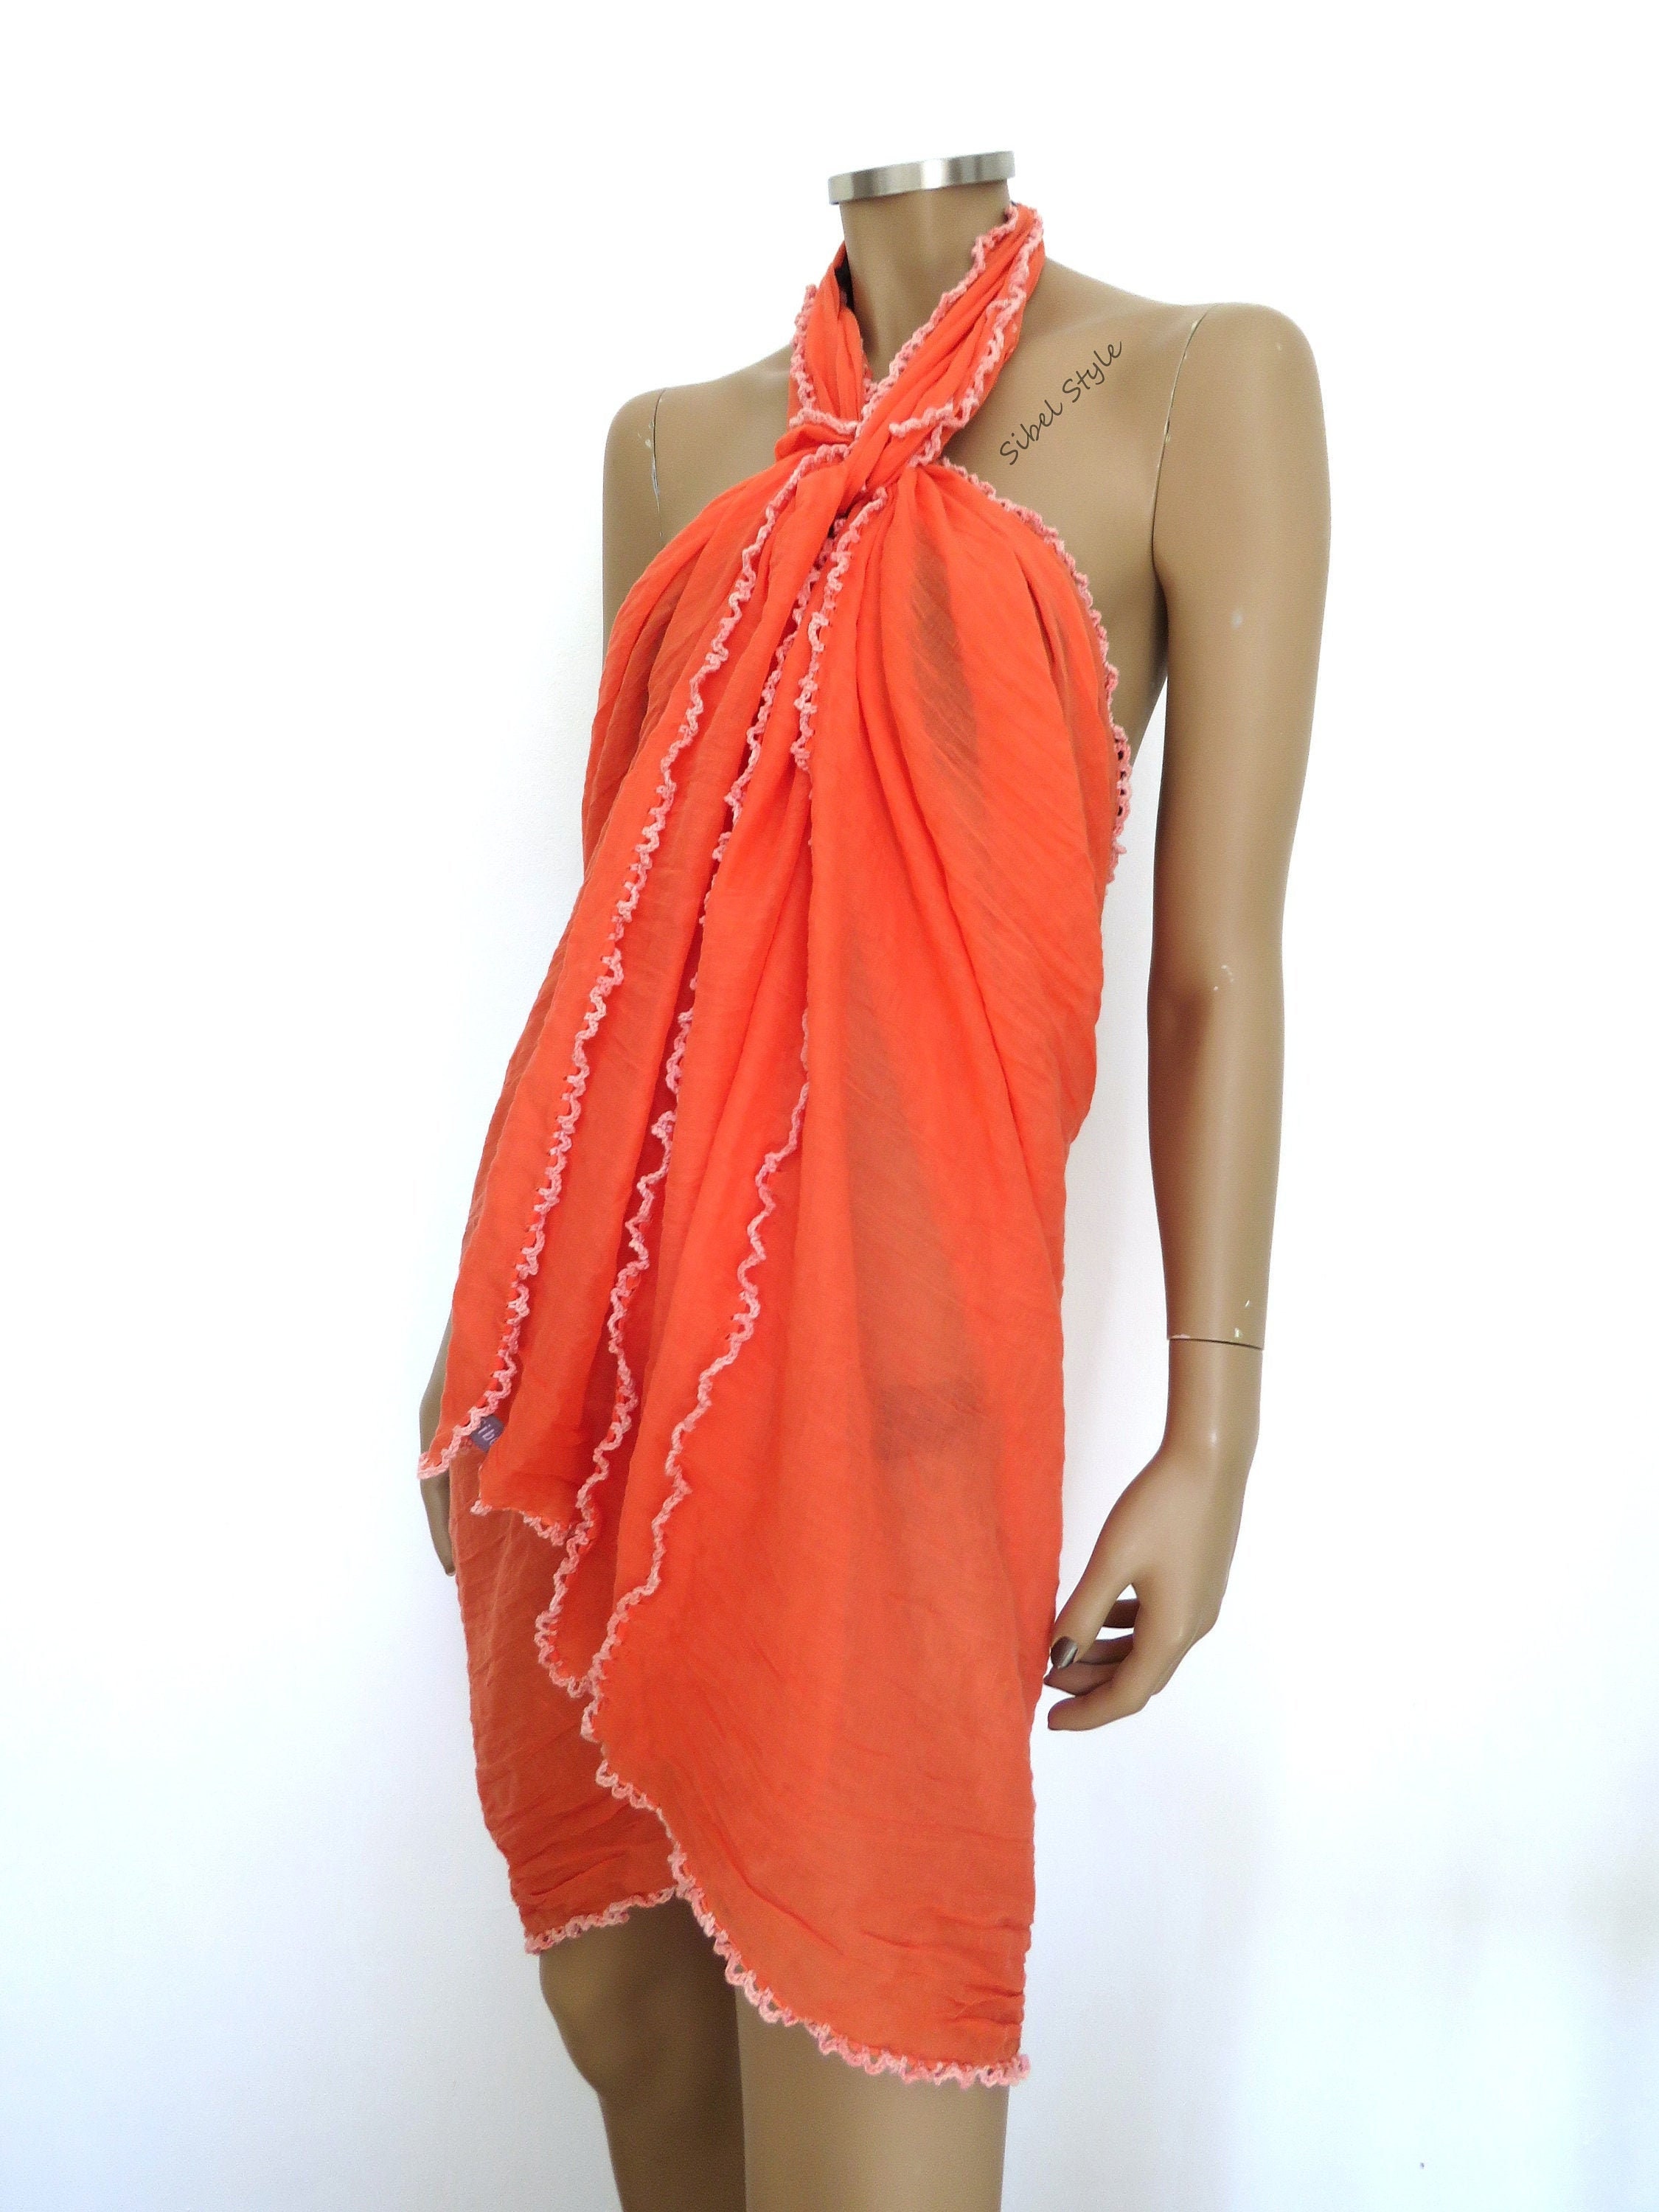 Women's cotton beach sareo orange sarong beachwear | Etsy